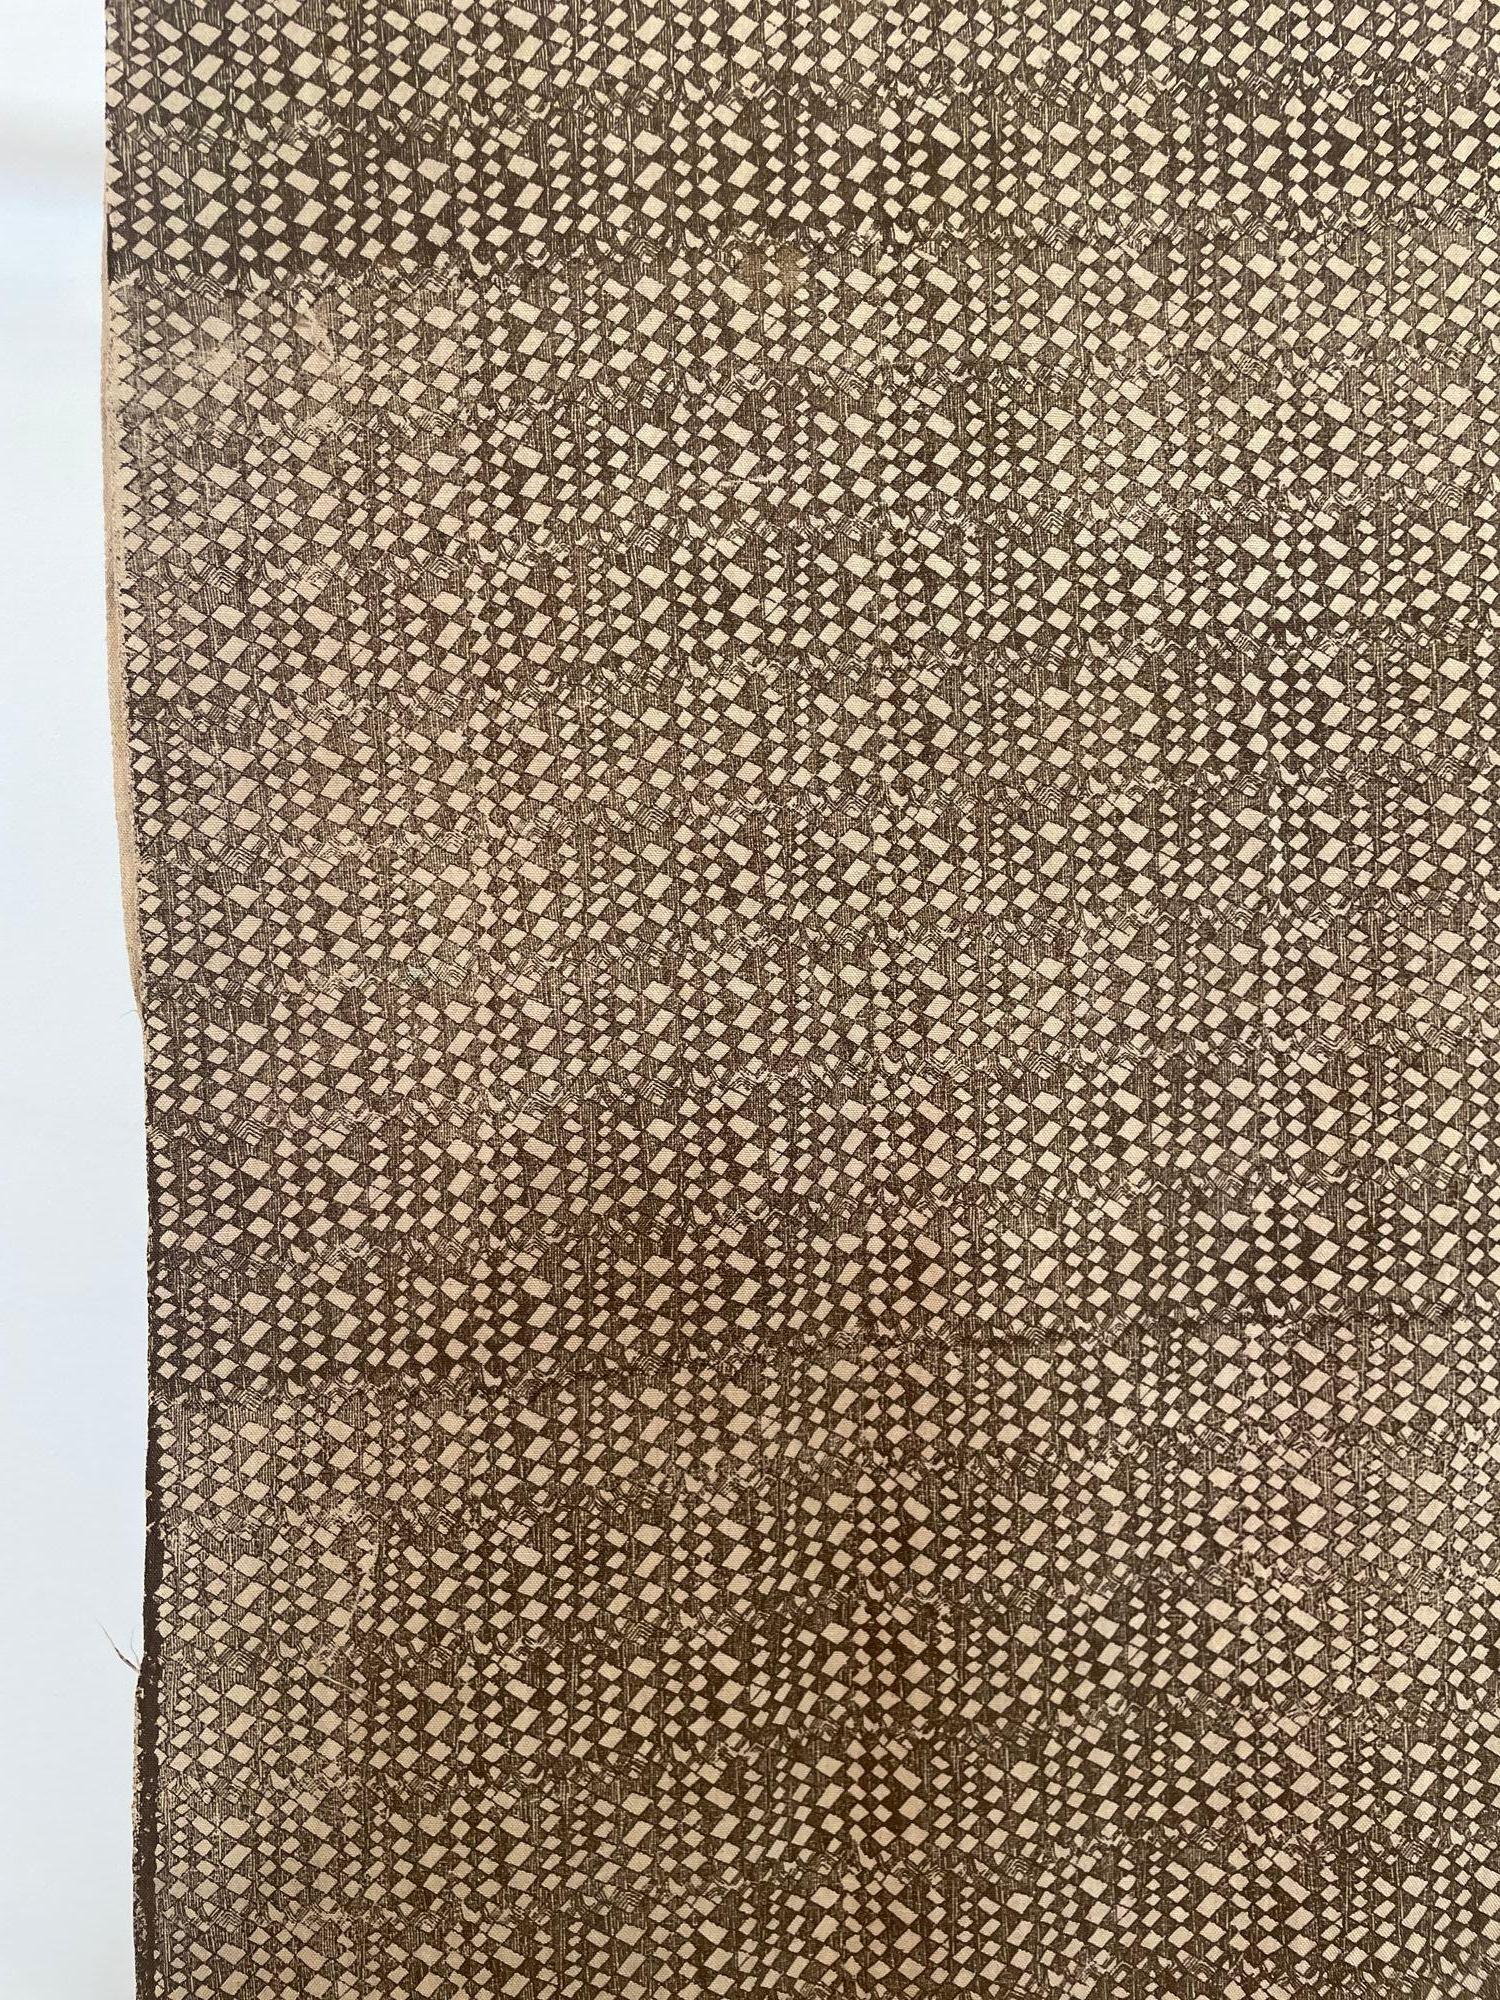 Tissu Batik Africain Naturel Tissu de coton tissé à la main imprimé à la main Ghana 10 yards.
Les couleurs sont des tons organiques de terre, beige et marron clair, avec des motifs géométriques.
Tissu non ciré circa 1950.
Fabriqué à la main au